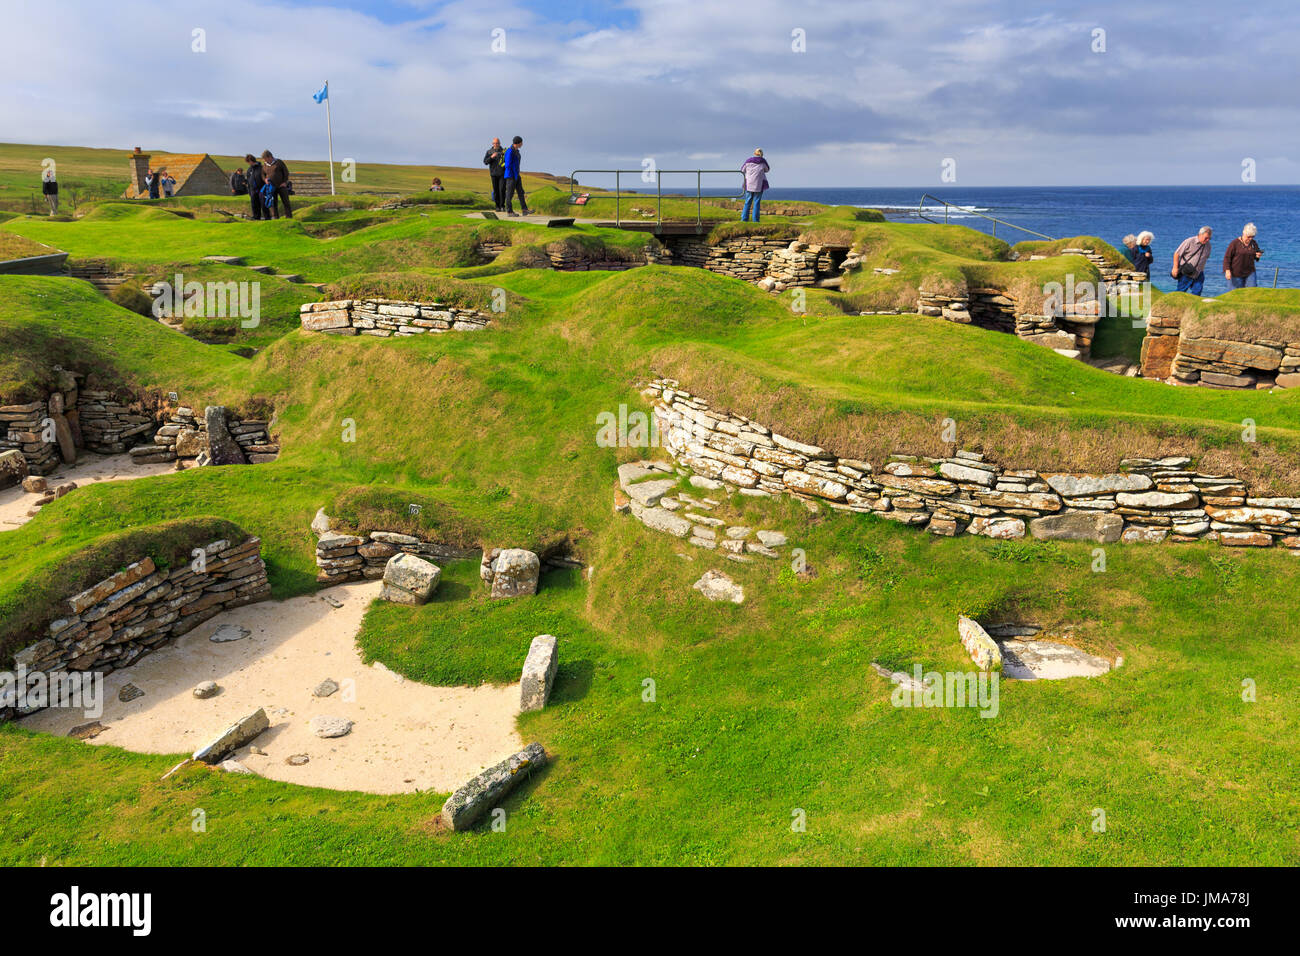 Skara Brae - villaggio neolitico rovine nei pressi di Sandwick, Orkney Island, Scotland, Regno Unito. UNESCO - Sito Patrimonio dell'umanità. Foto Stock